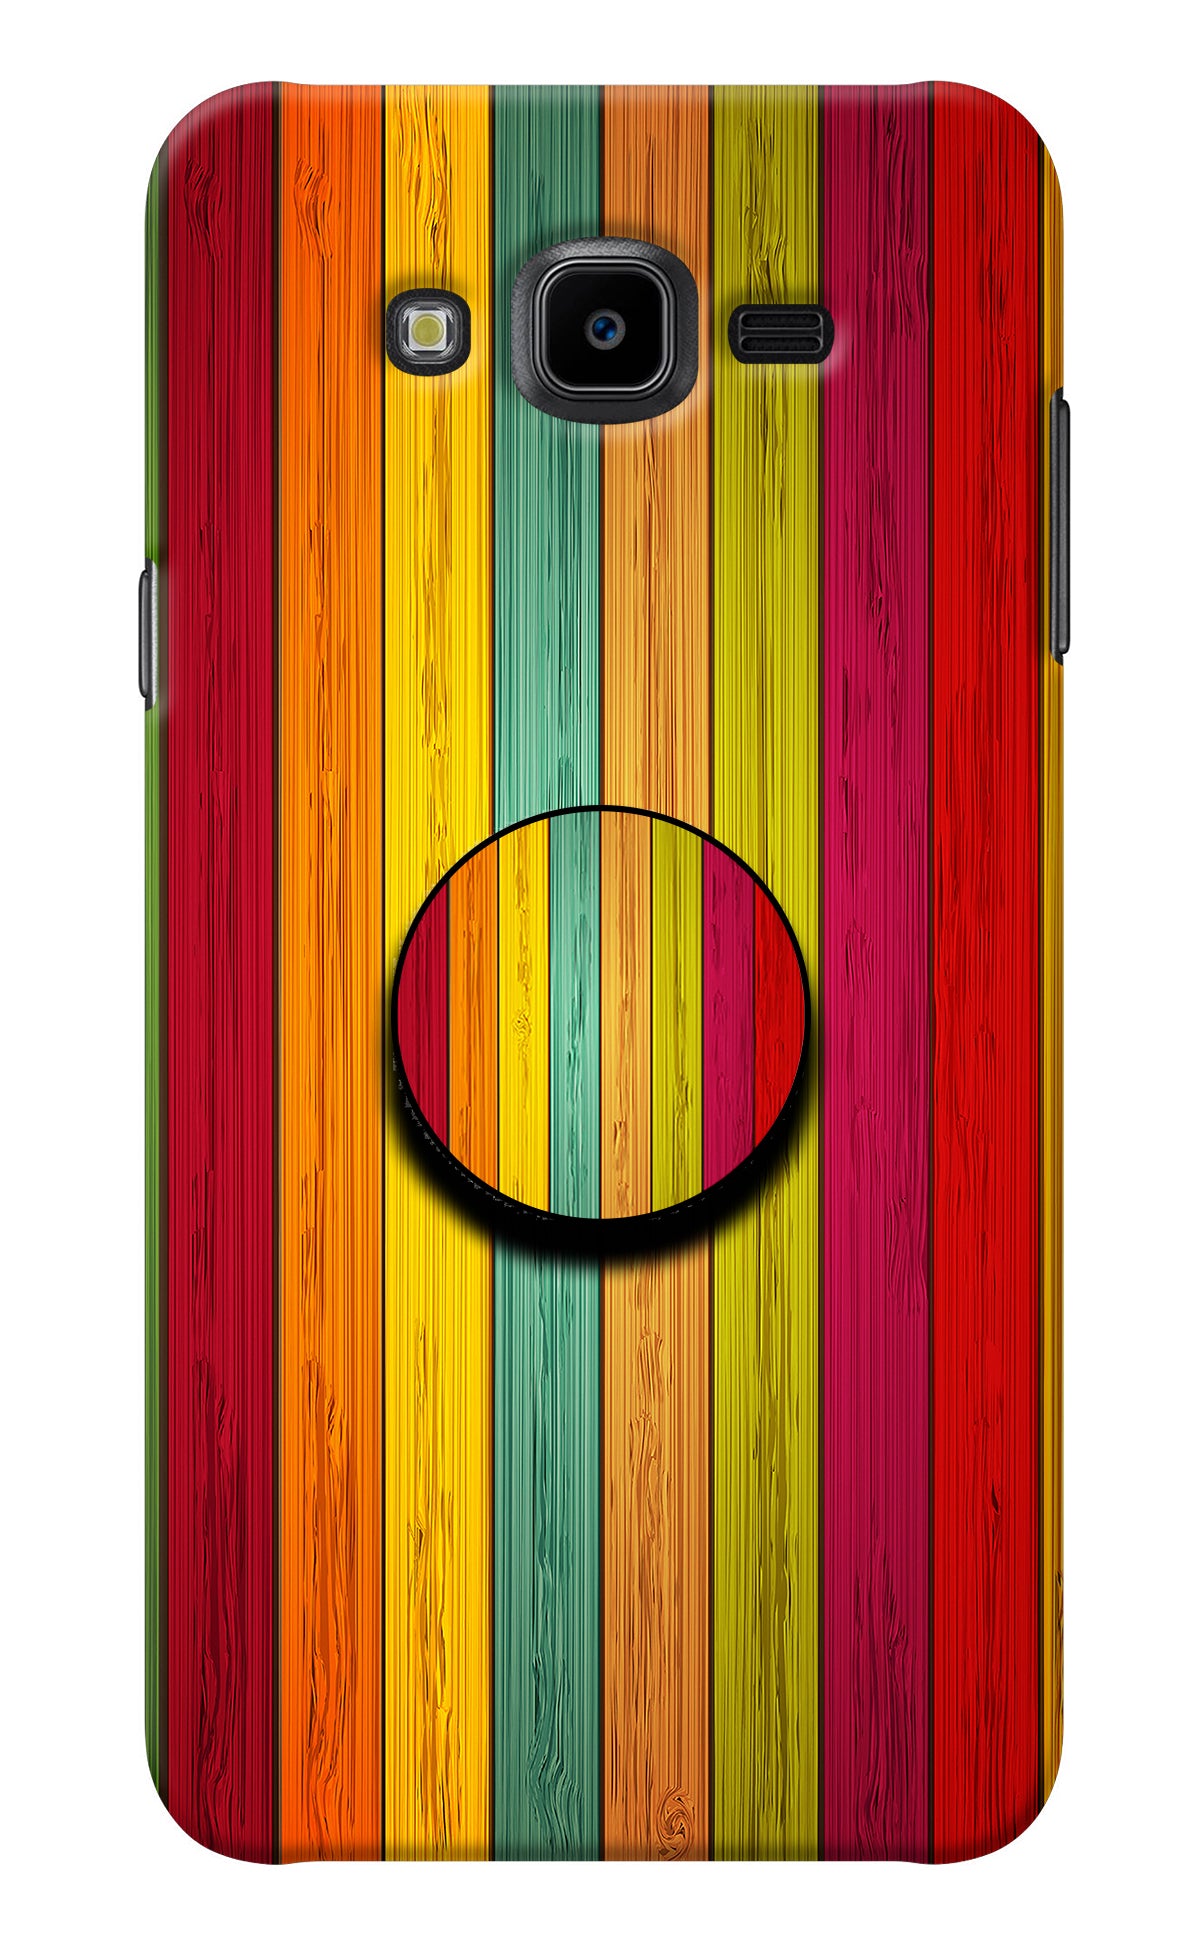 Multicolor Wooden Samsung J7 Nxt Pop Case